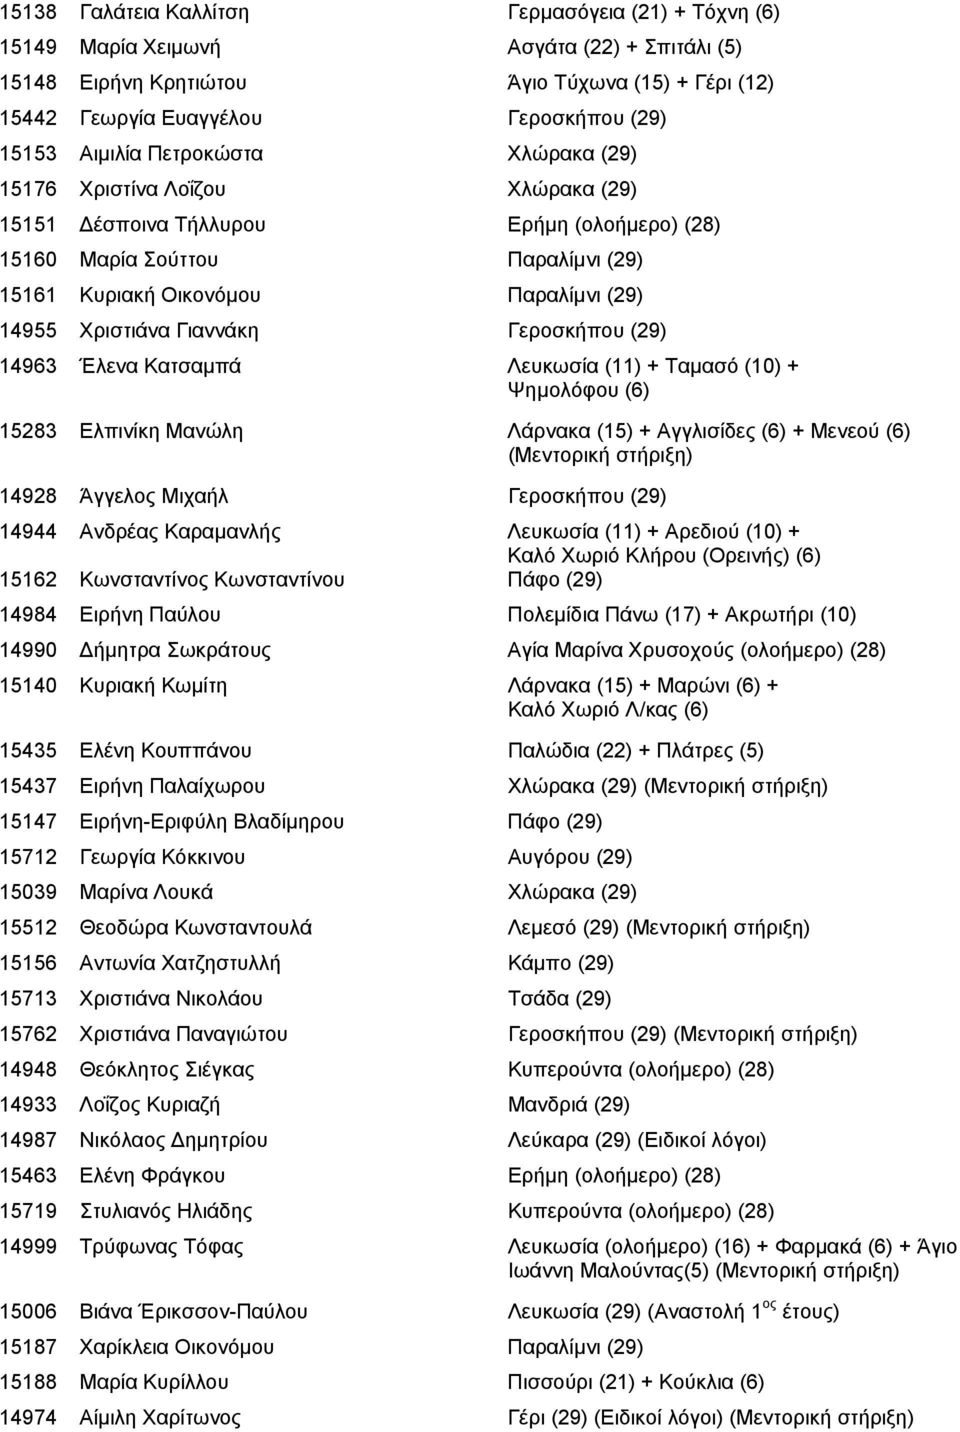 Χριστιάνα Γιαννάκη Γεροσκήπου (29) 14963 Έλενα Κατσαμπά Λευκωσία (11) + Ταμασό (10) + Ψημολόφου (6) 15283 Ελπινίκη Μανώλη Λάρνακα (15) + Αγγλισίδες (6) + Μενεού (6) 14928 Άγγελος Μιχαήλ Γεροσκήπου